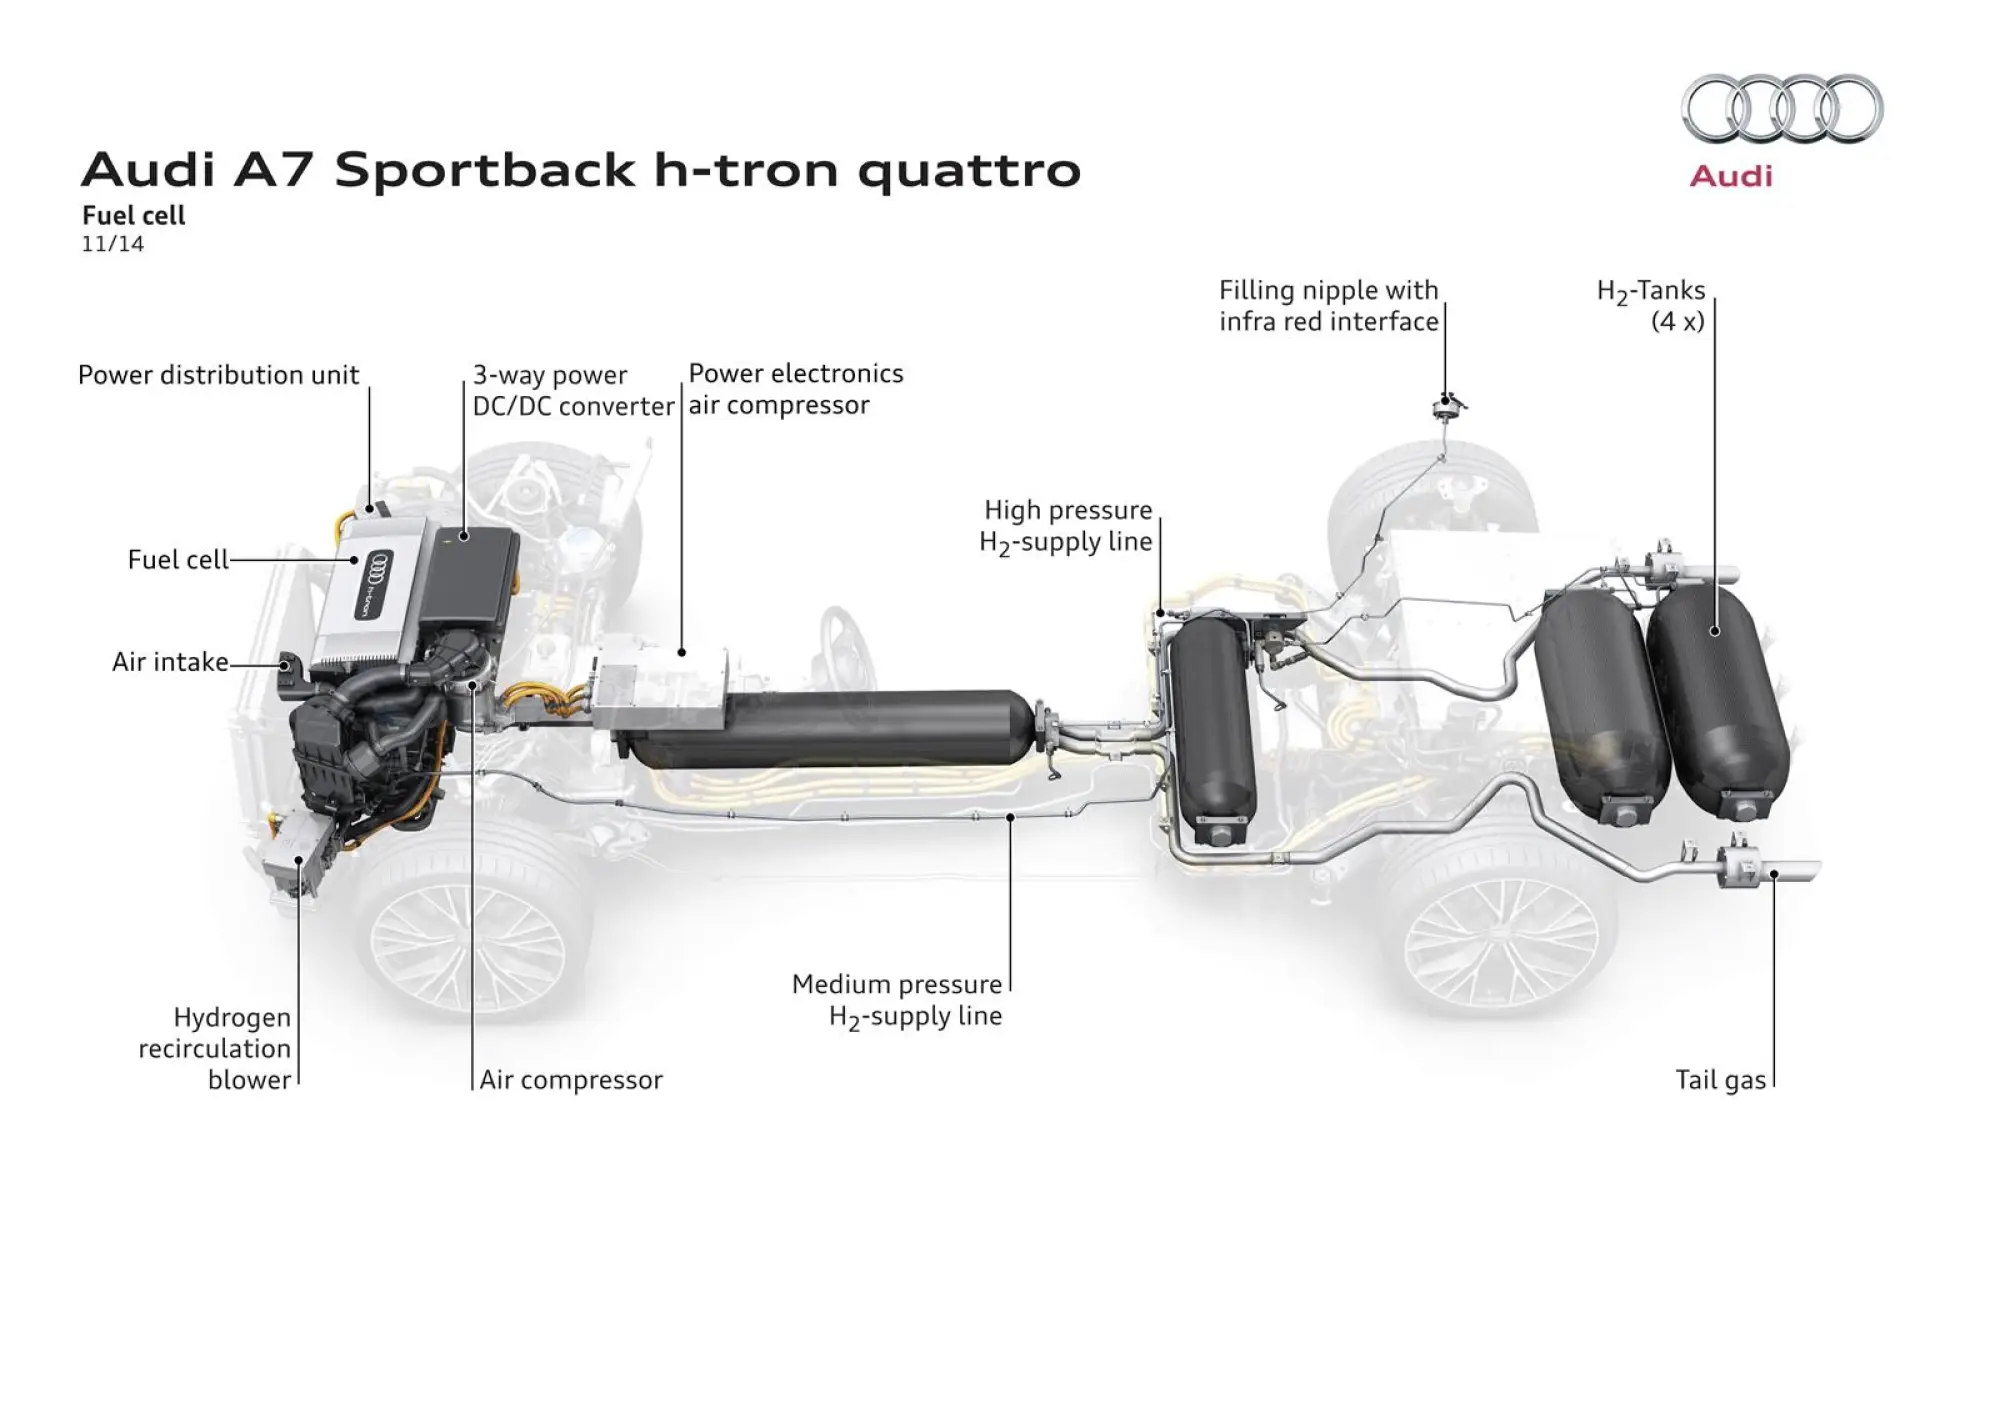 Audi A7 Sportback h-tron quattro concept - 13